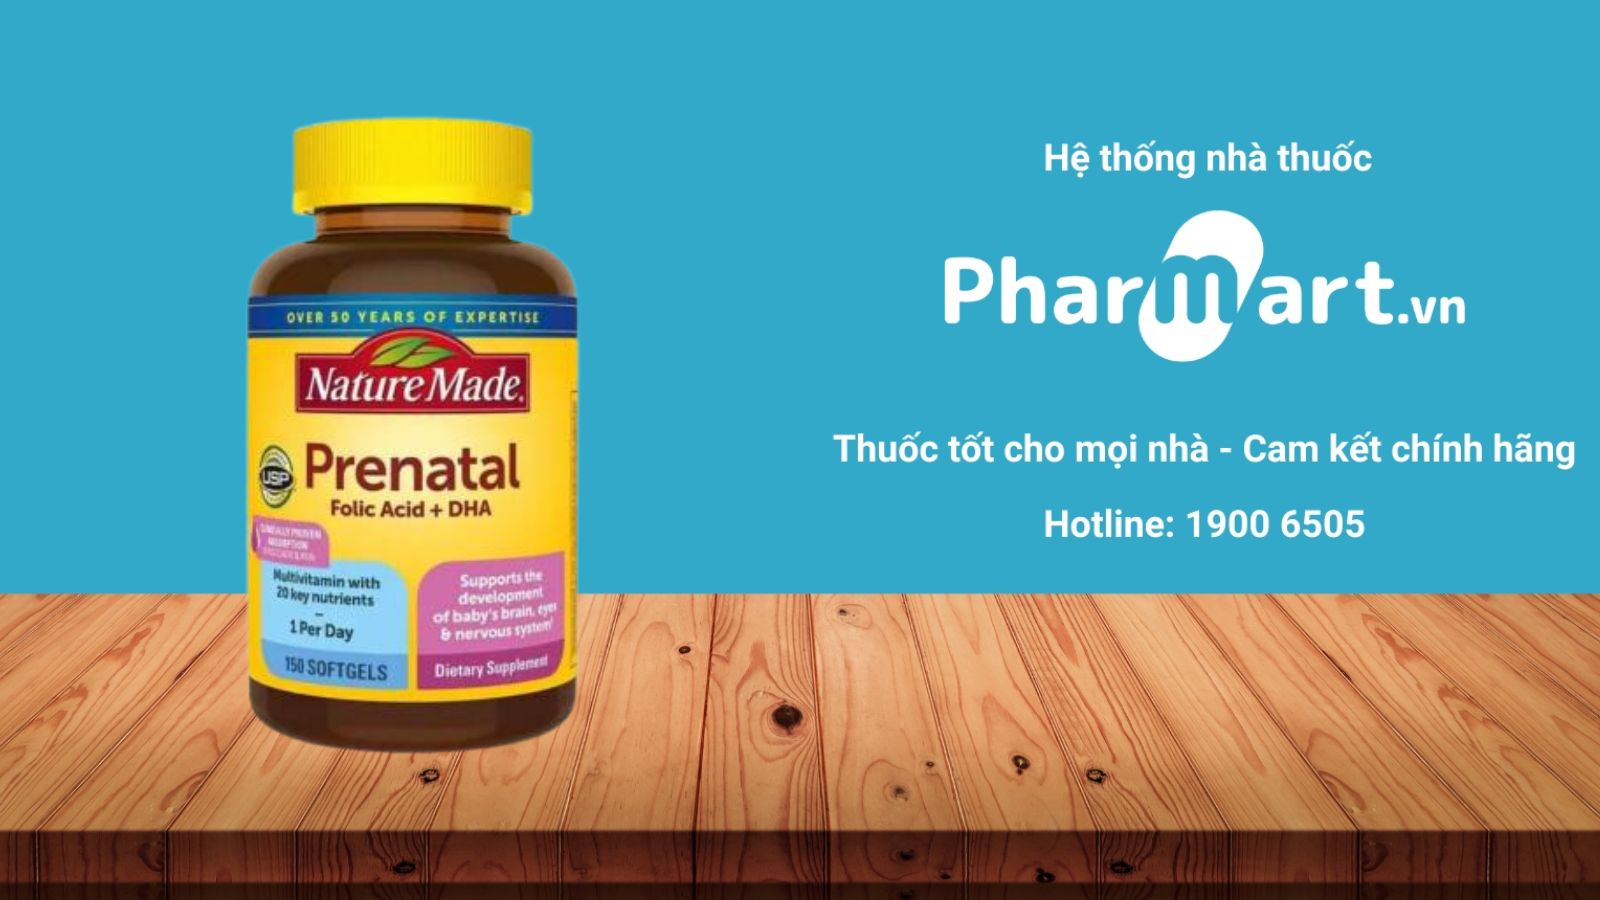 Mua Prenatal Folic Acid + DHA chính hãng tại Pharmart.vn